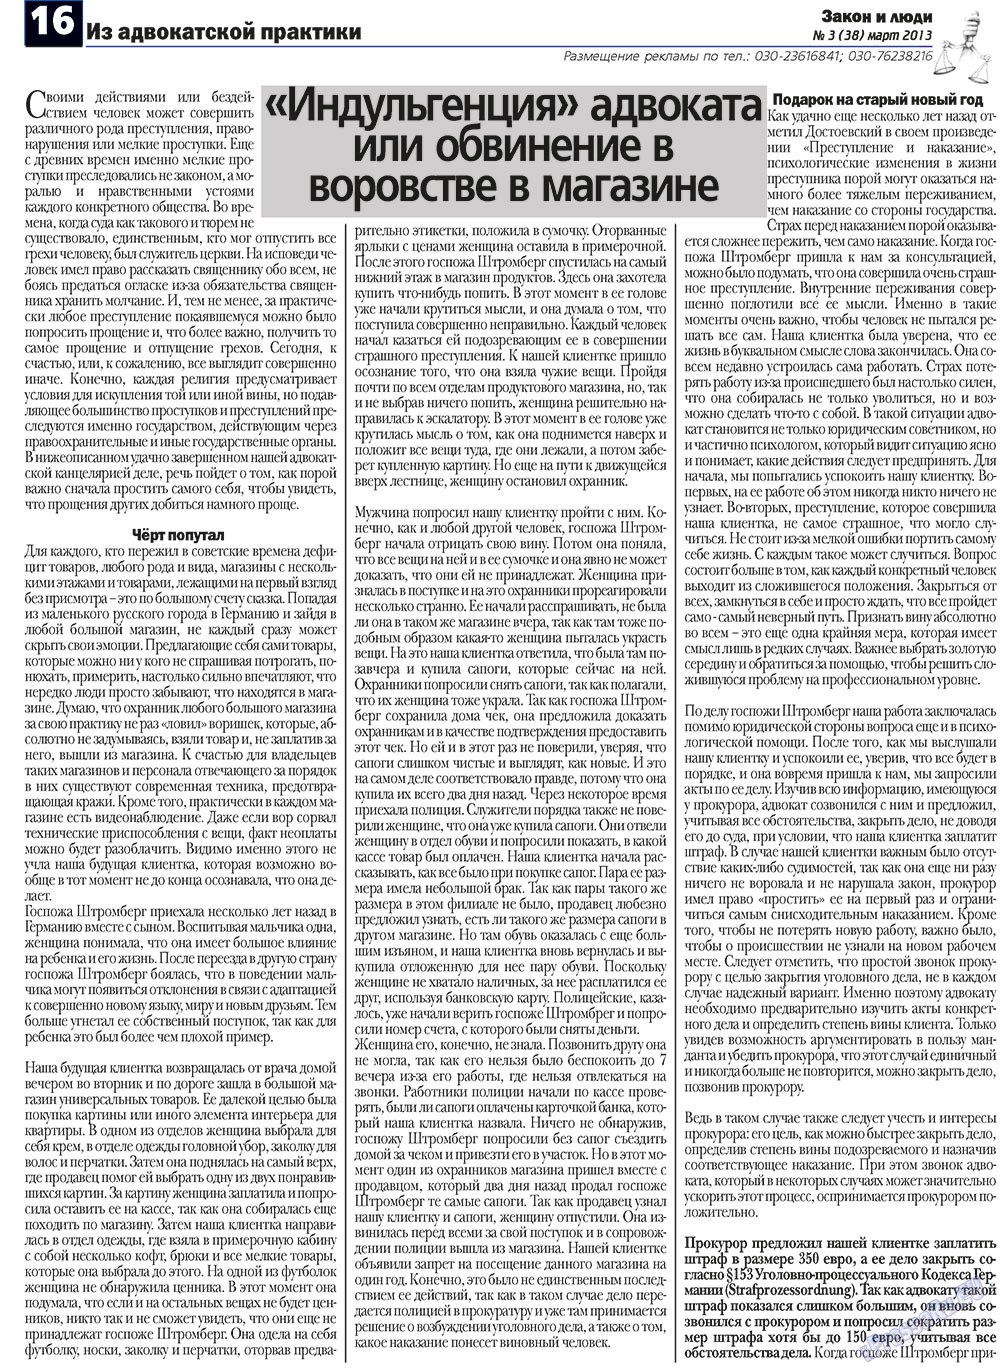 Закон и люди, газета. 2013 №3 стр.16